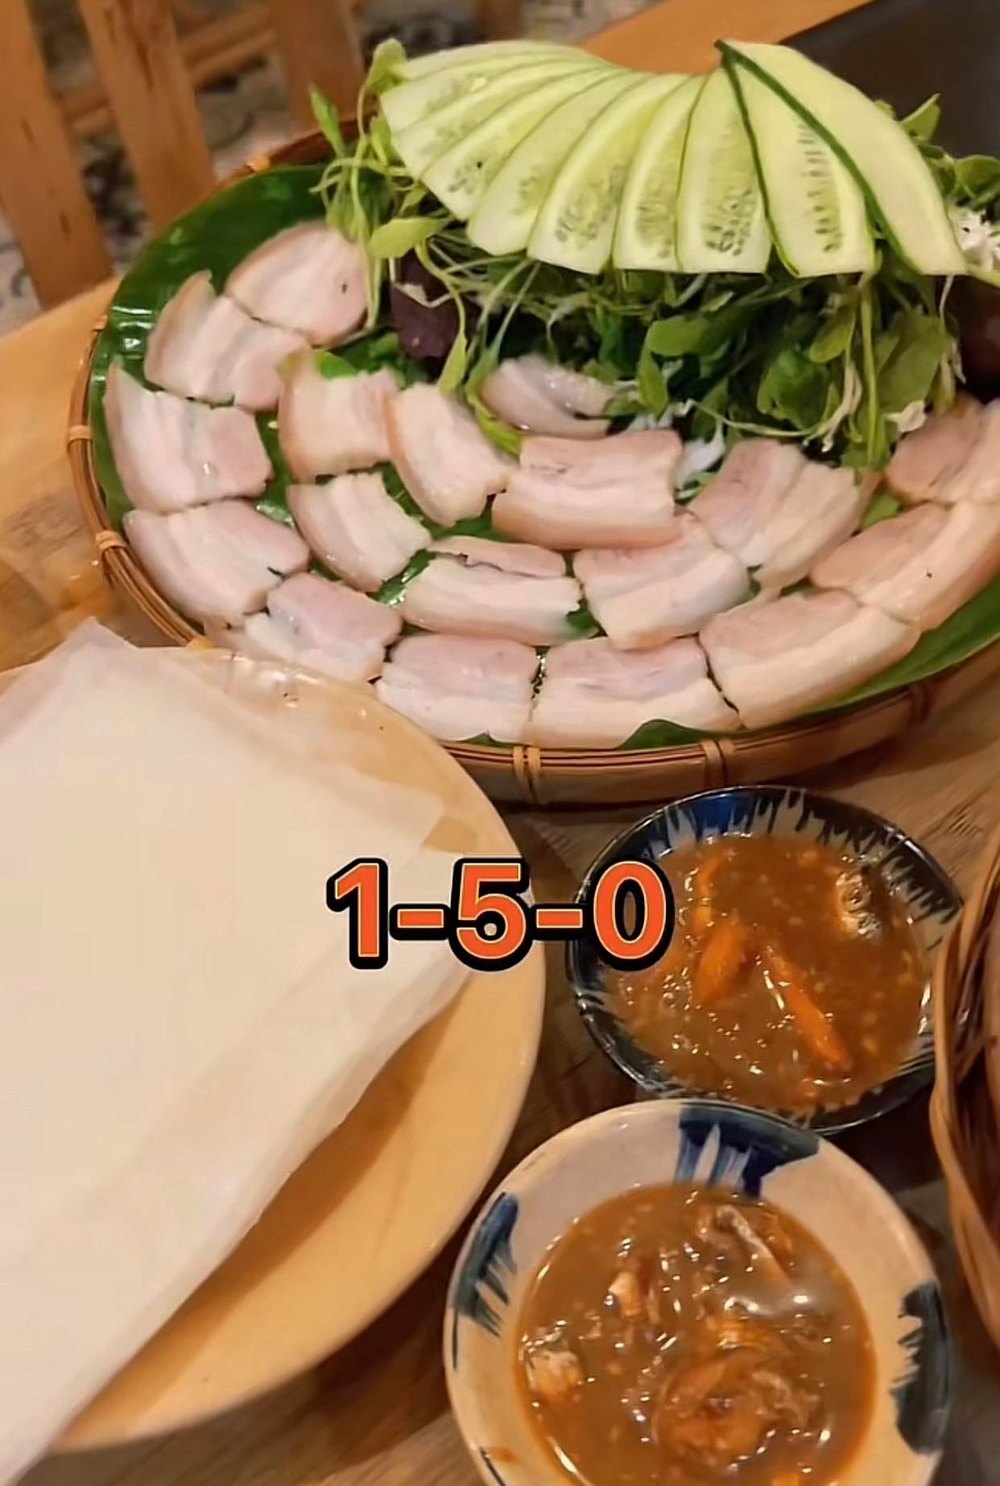  
Phần thịt luộc chấm mắm nêm ở quán Trường Giang có giá 150 nghìn. (Ảnh chụp màn hình TikTok Q.N)